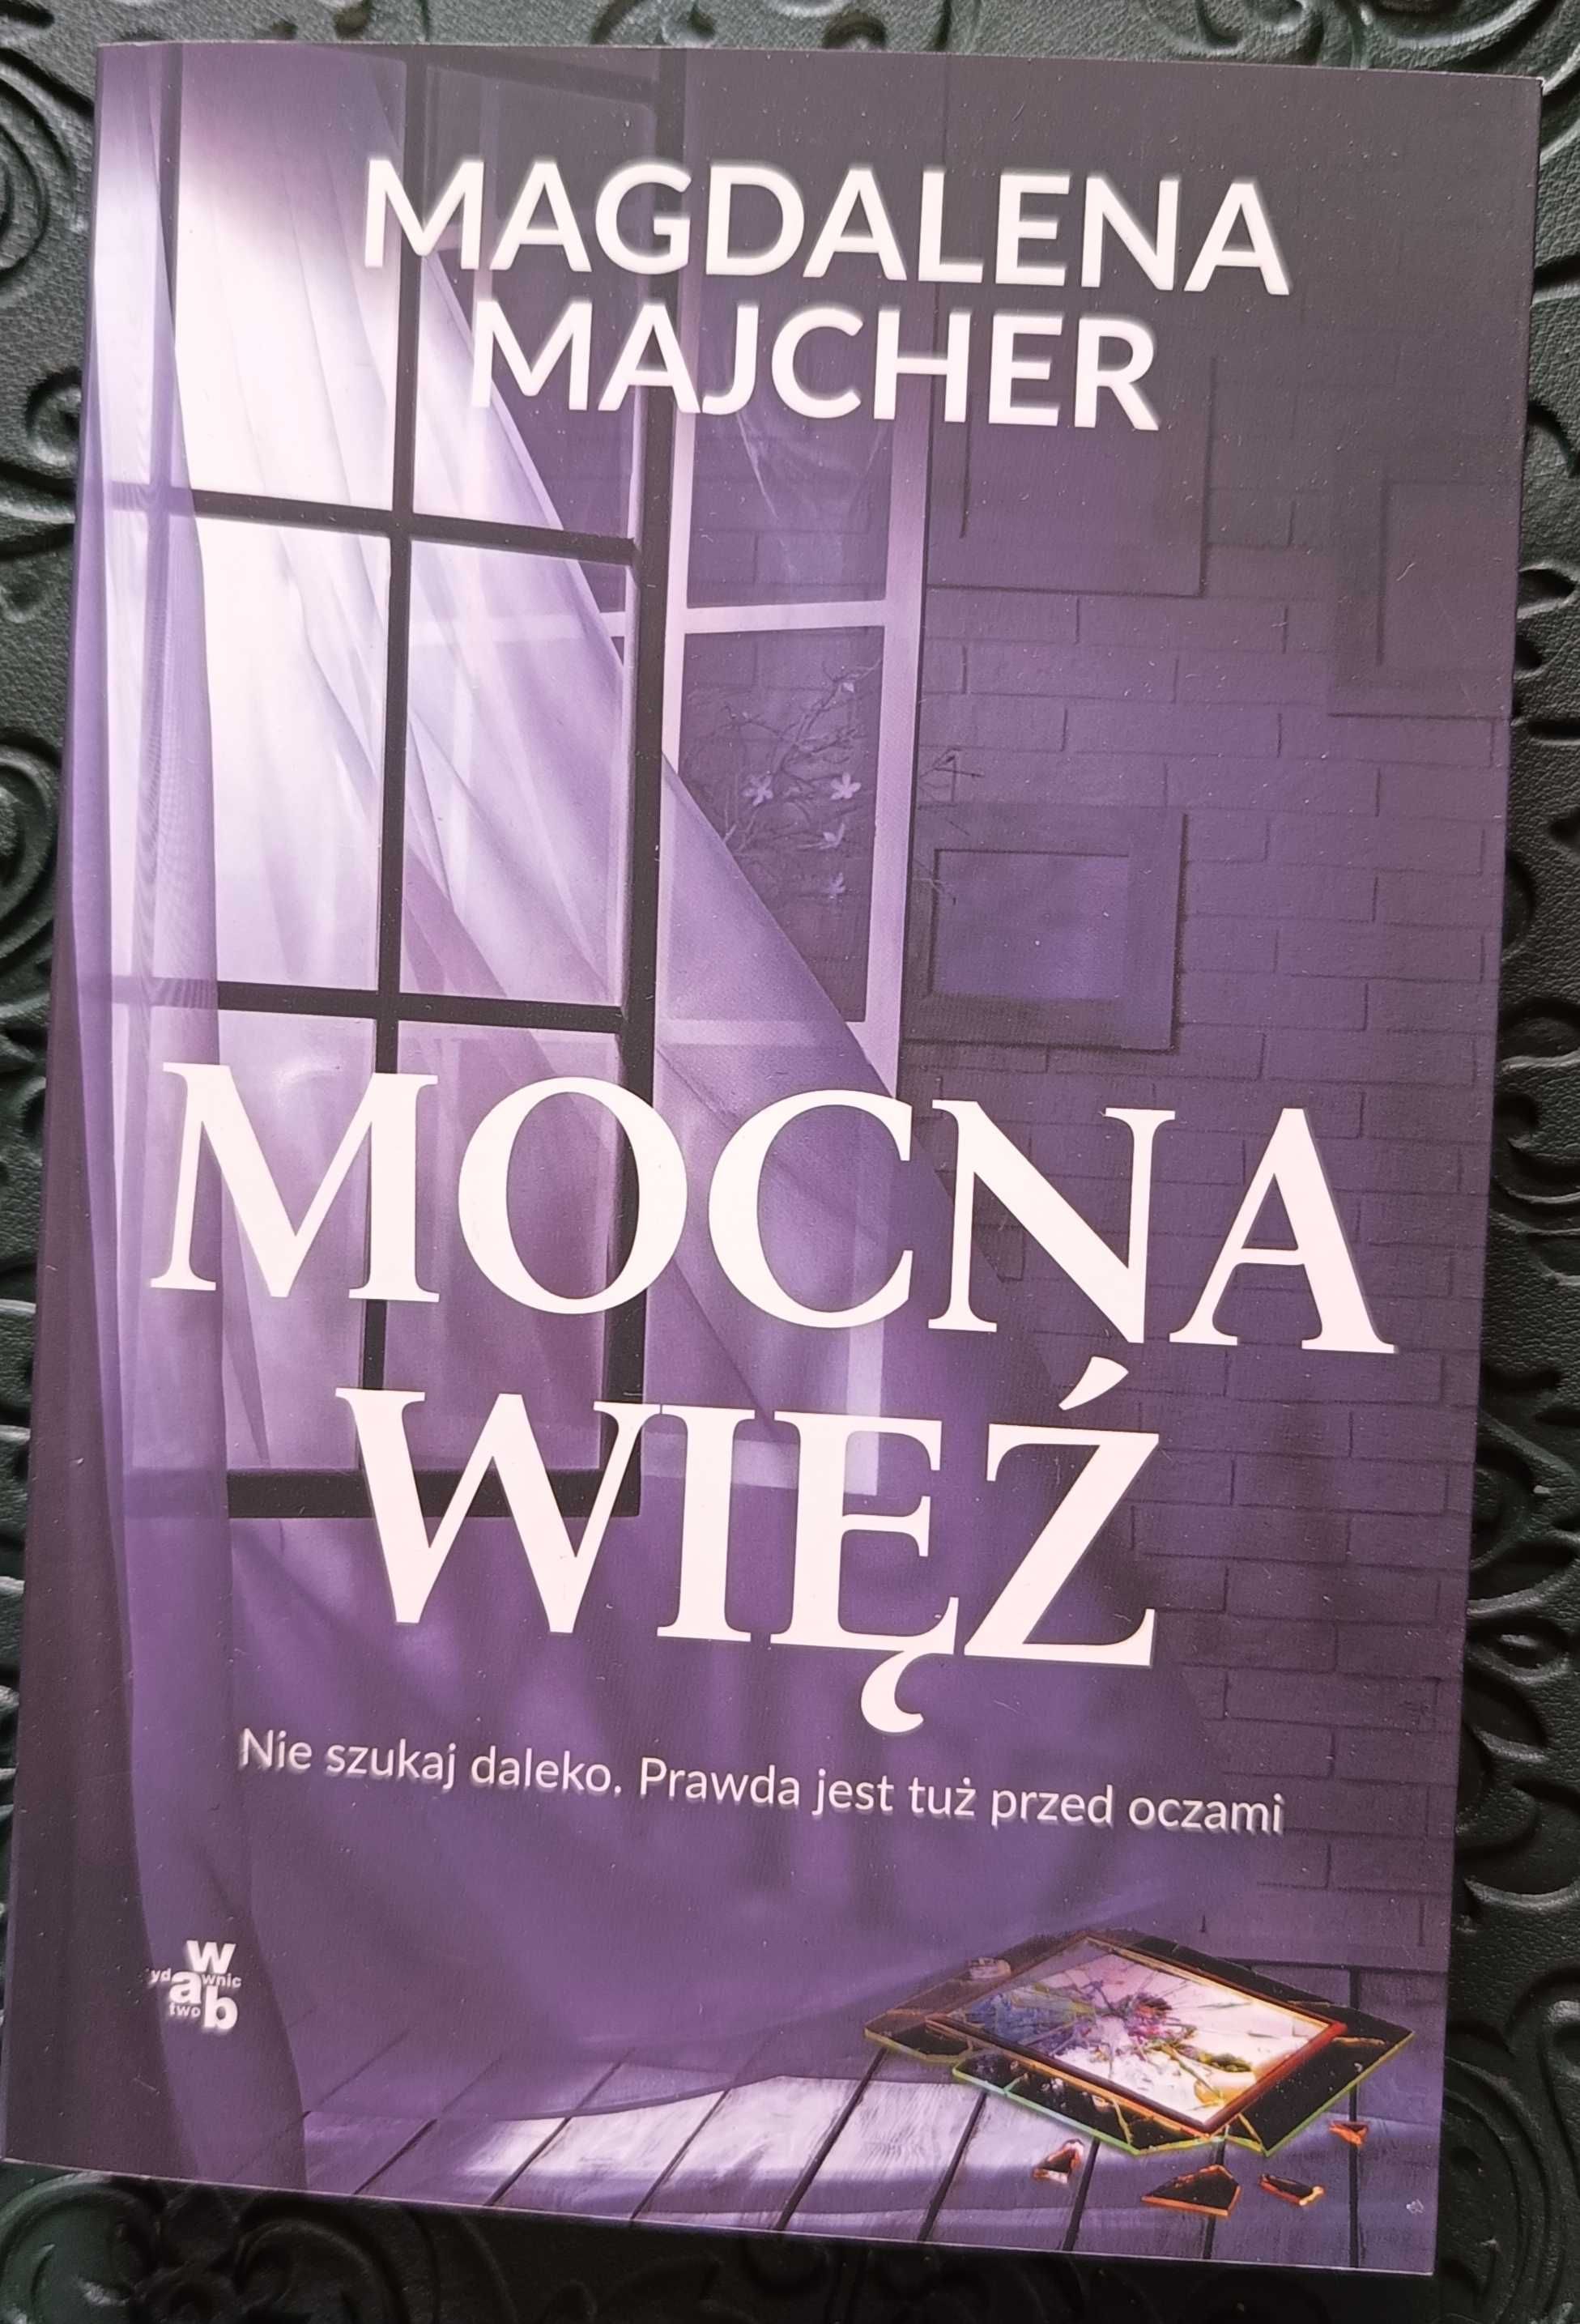 Książka "Mocna więź" Magdalena Majcher, nowa za 12zł